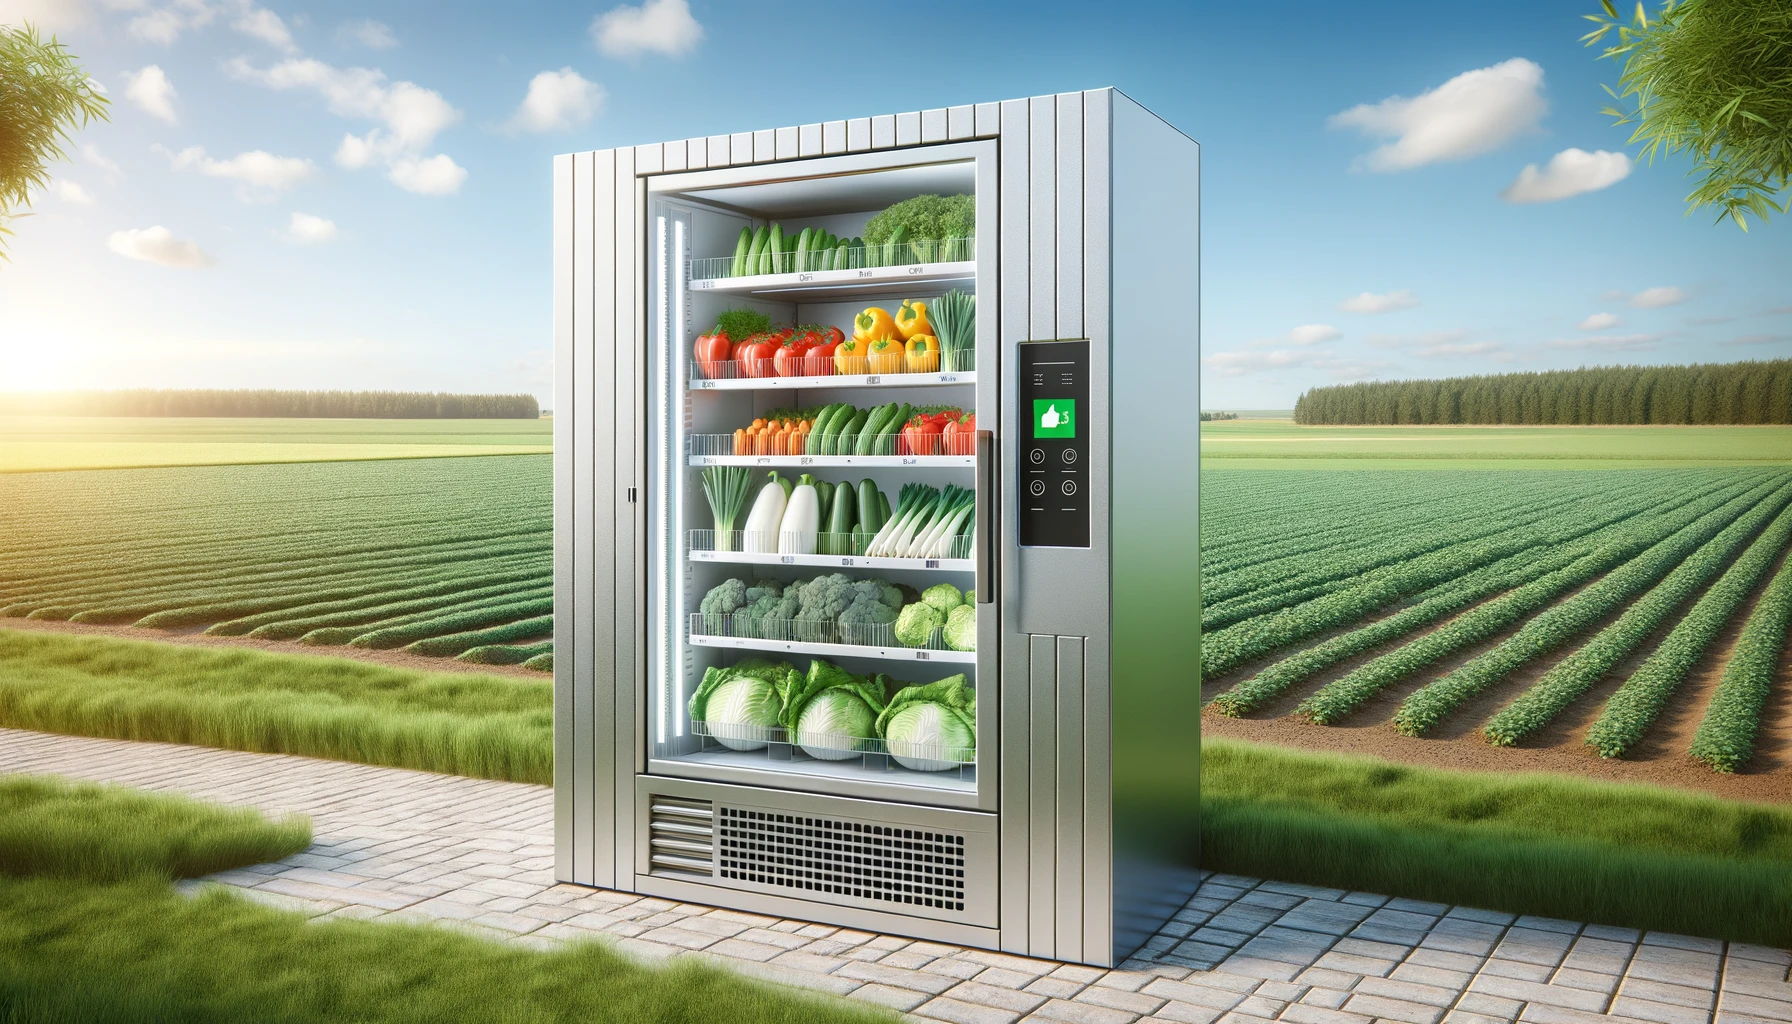 【農家の方必見】野菜販売に適しているロッカー型自動販売機3選